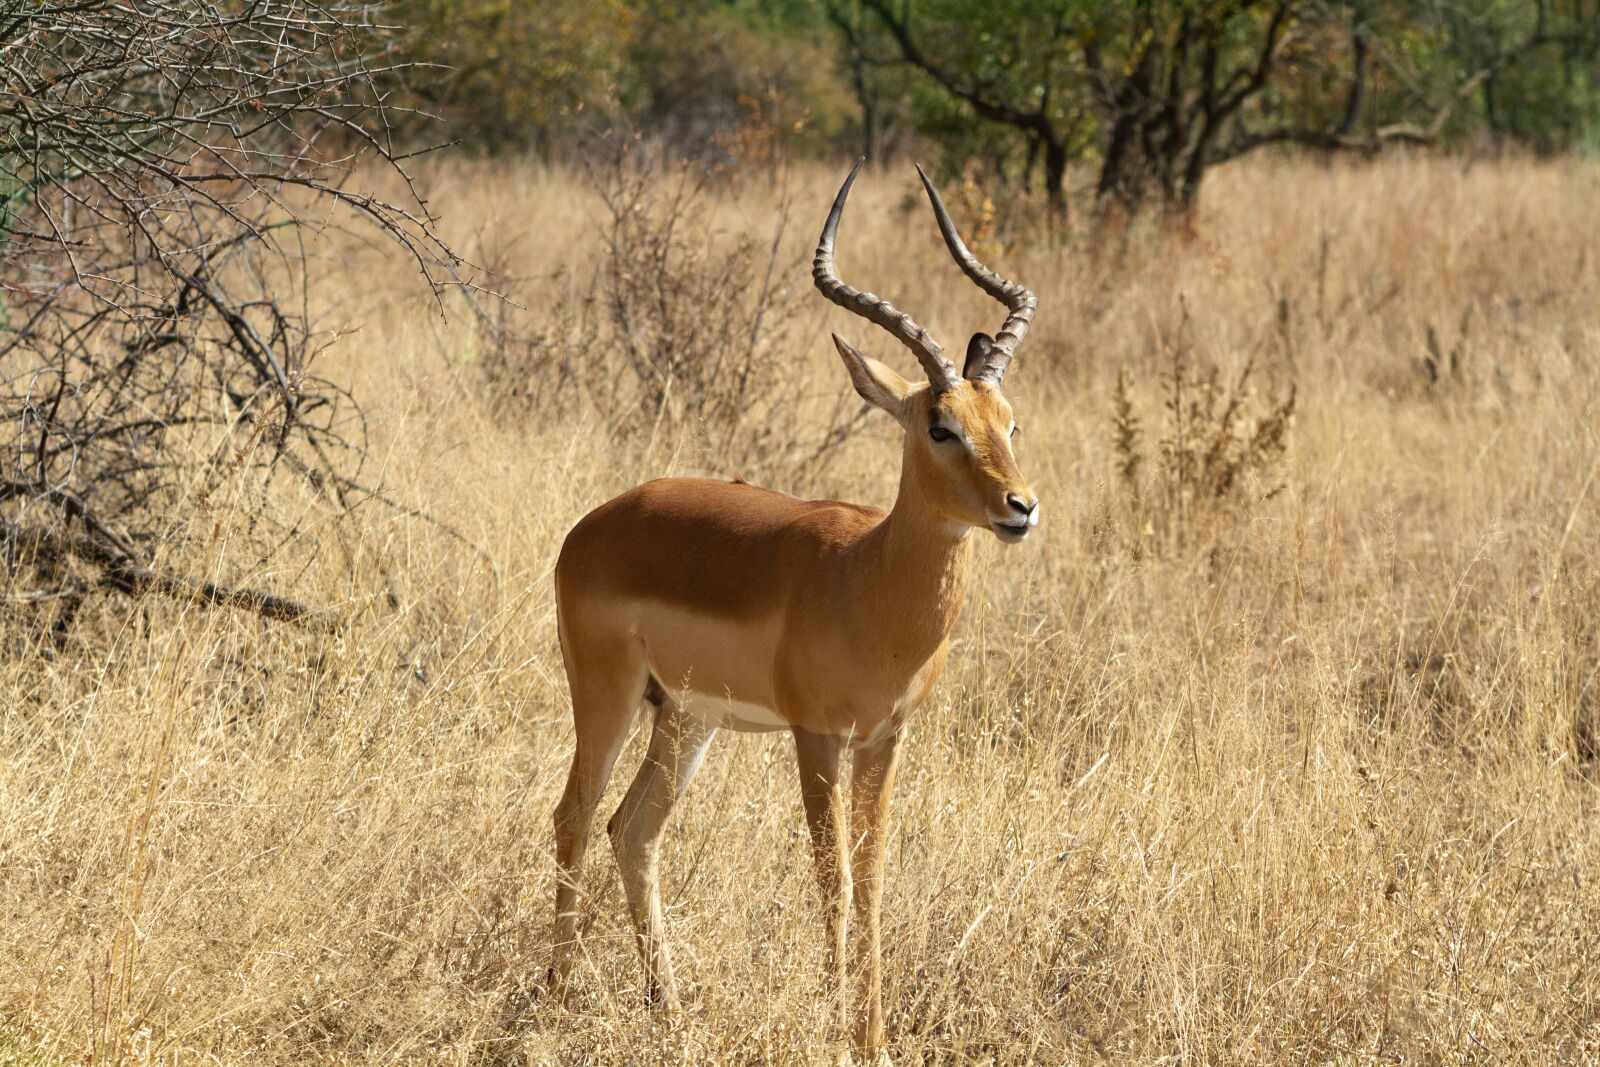 Canon EOS 7D sample photo. "Impala, rooibok, horns" photography